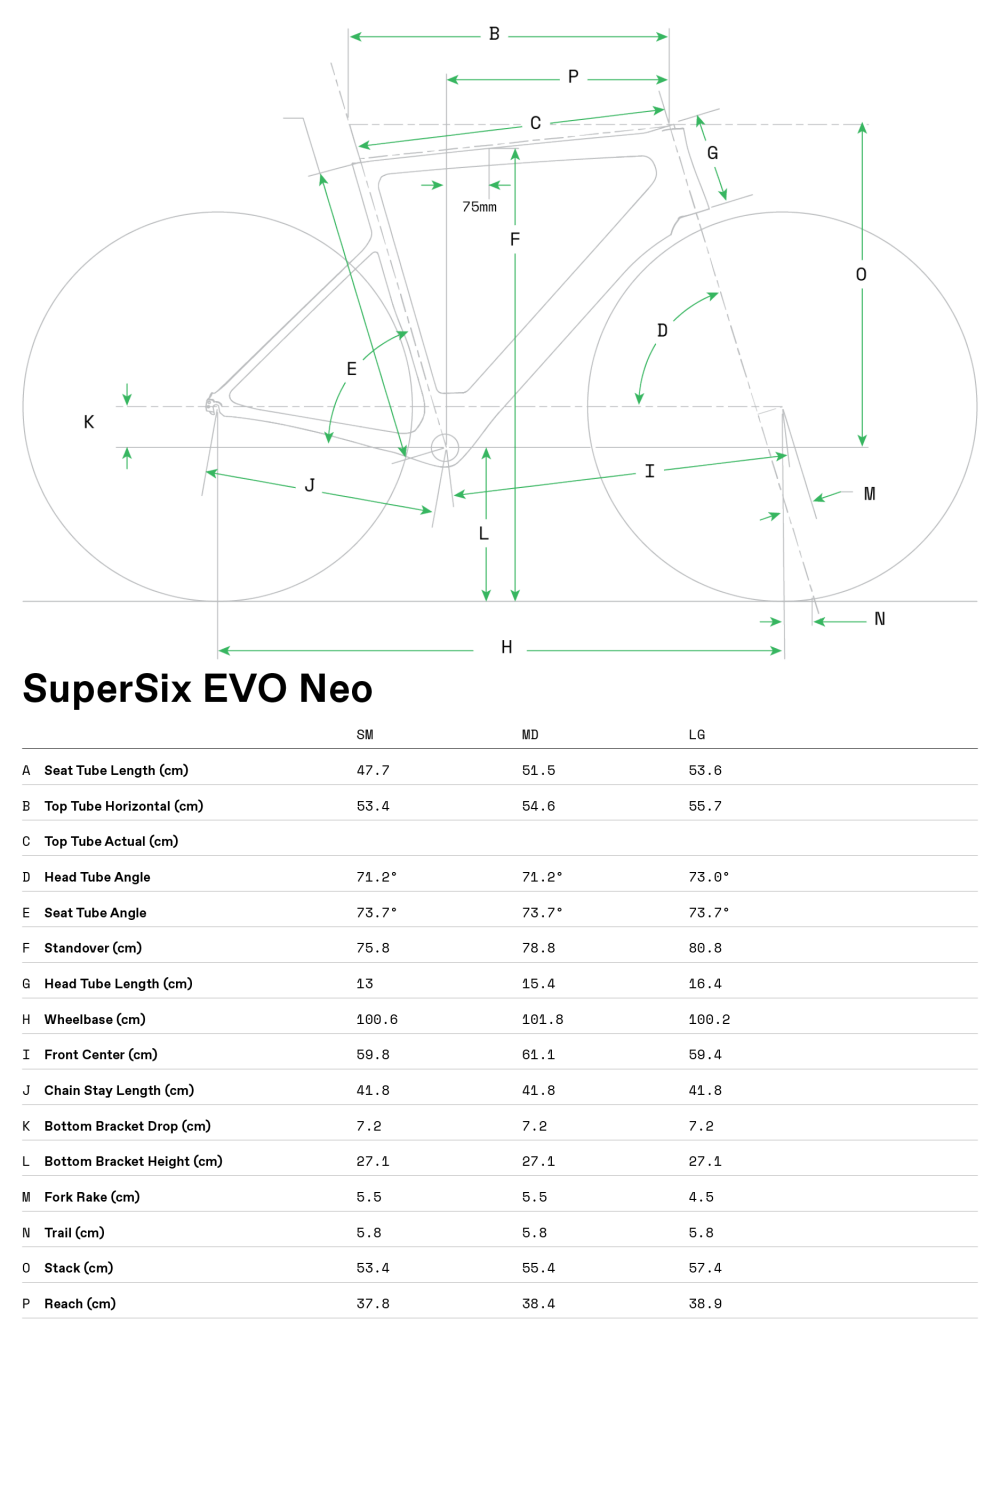 SuperSix EVO Neo 1 - 